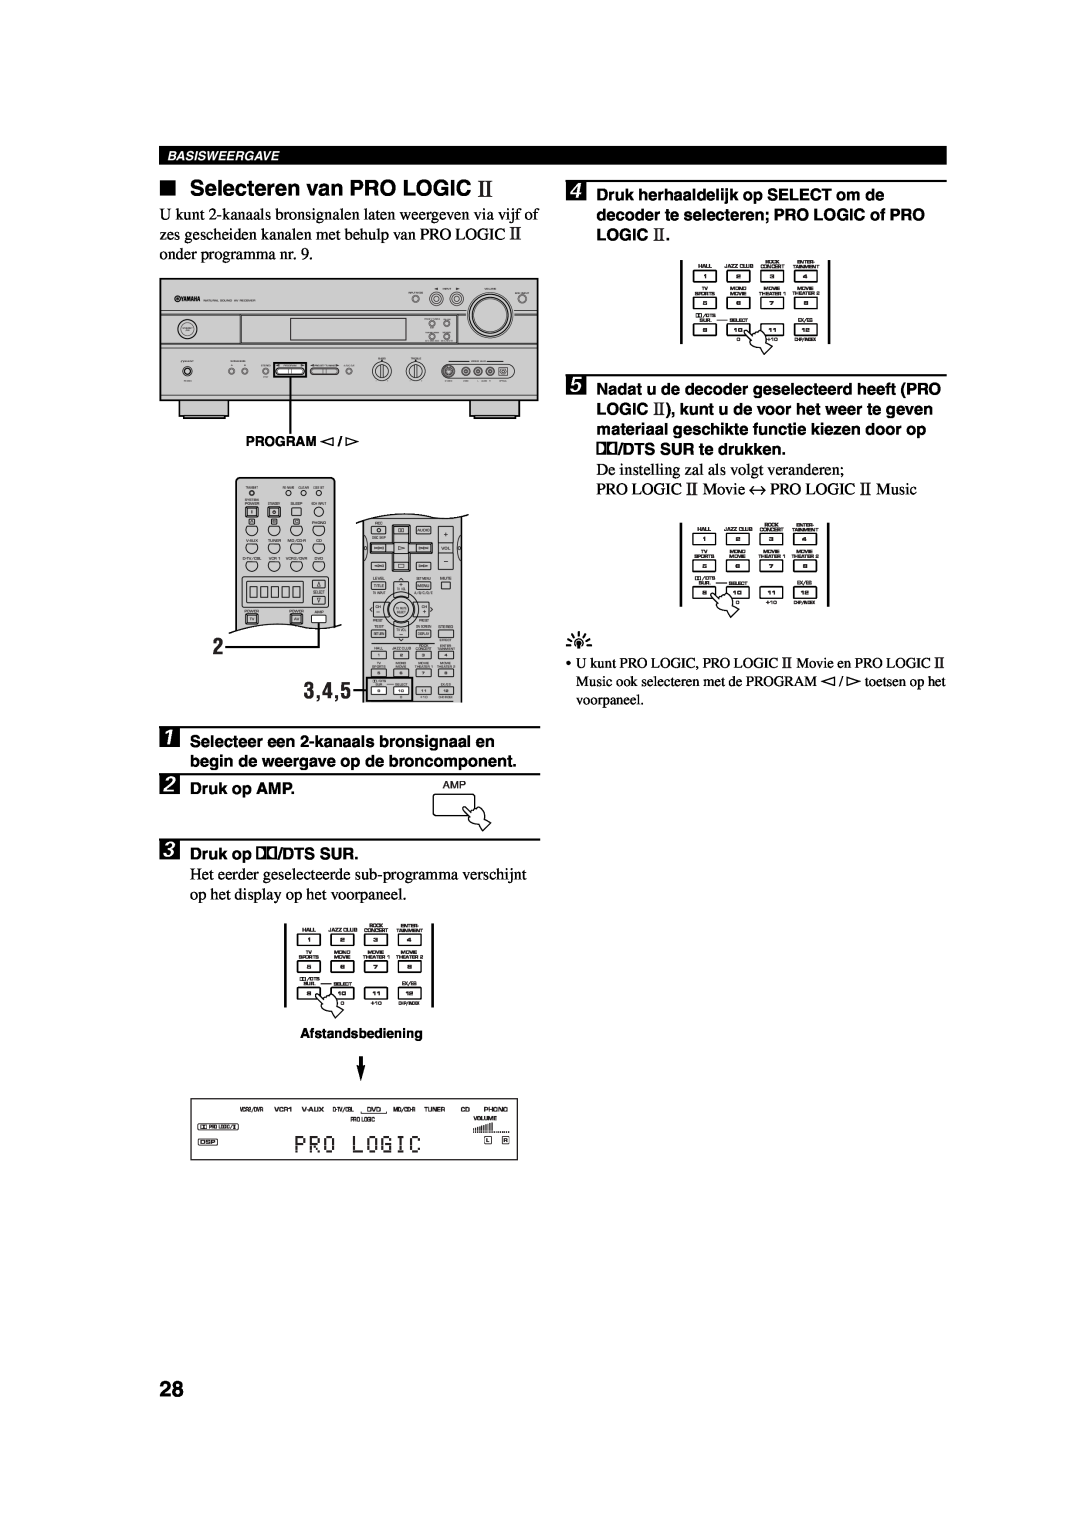 Yamaha RX-V730RDS owner manual Selecteren van PRO LOGIC, 3,4,5, Pro Logic, Druk op AMP, Druk op q/DTS SUR, Basisweergave 